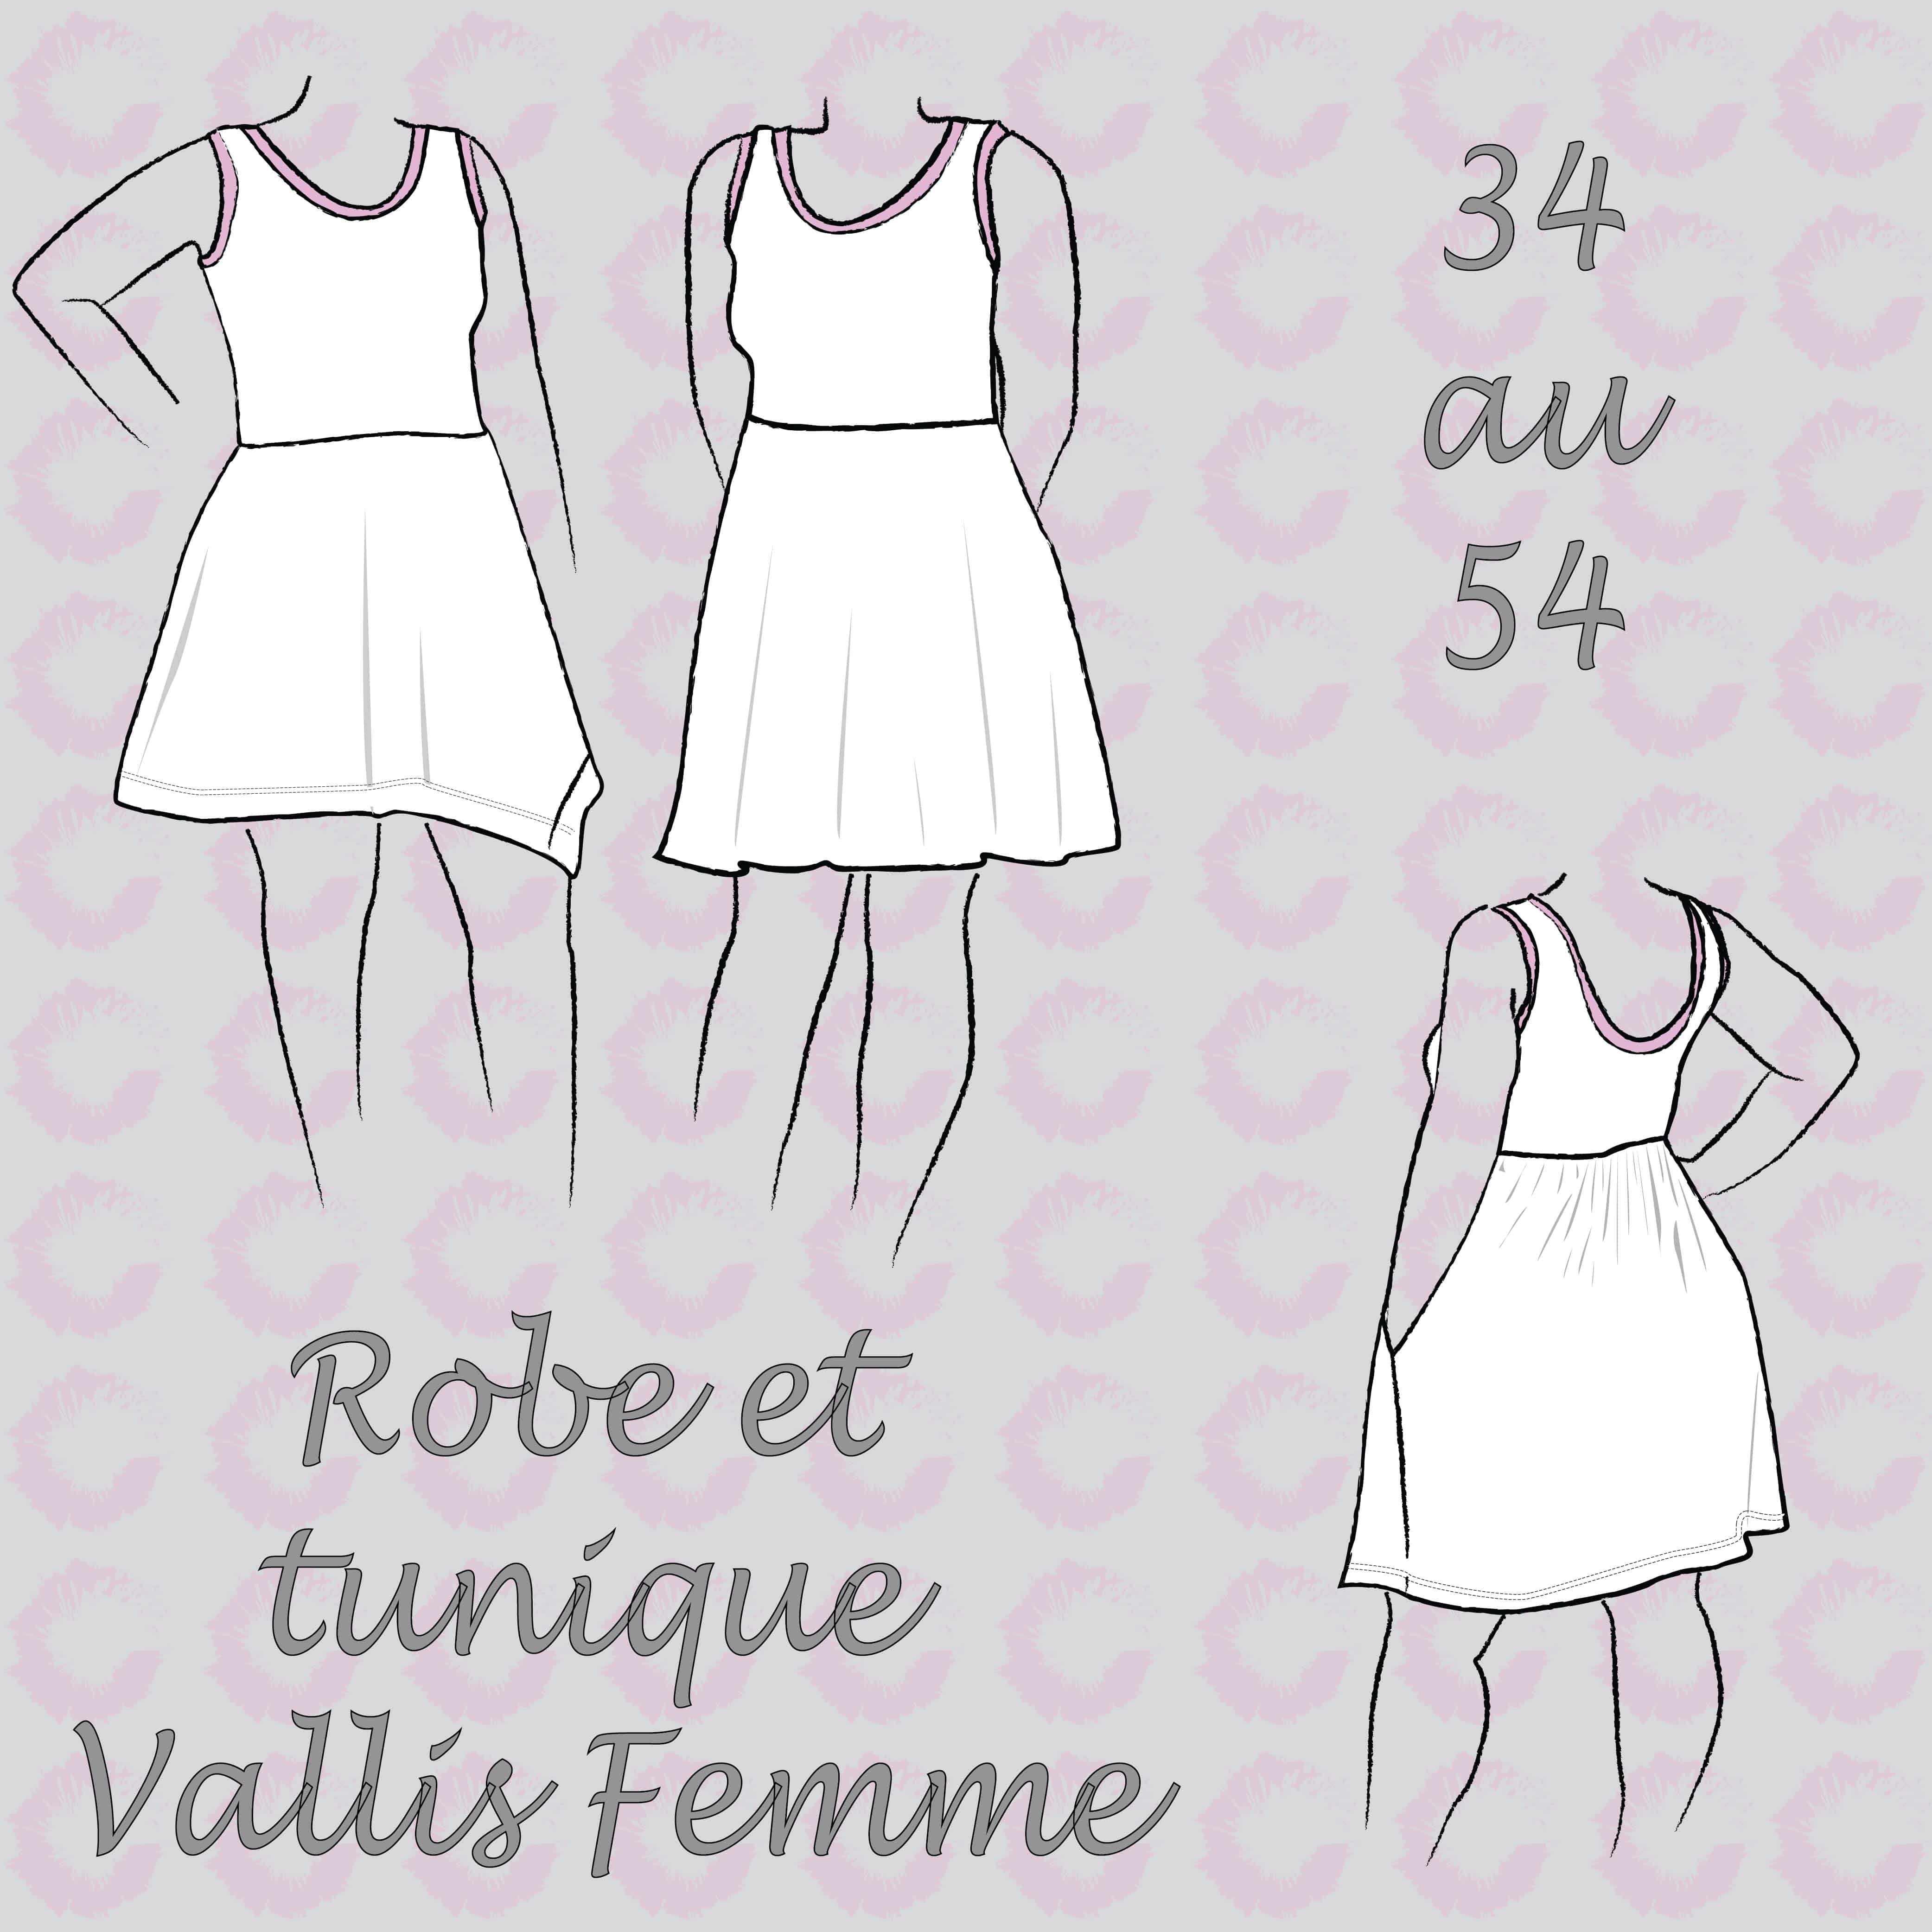 Les Femmes Tunique et Robe Vallis – Français – Sofilantjes Patterns